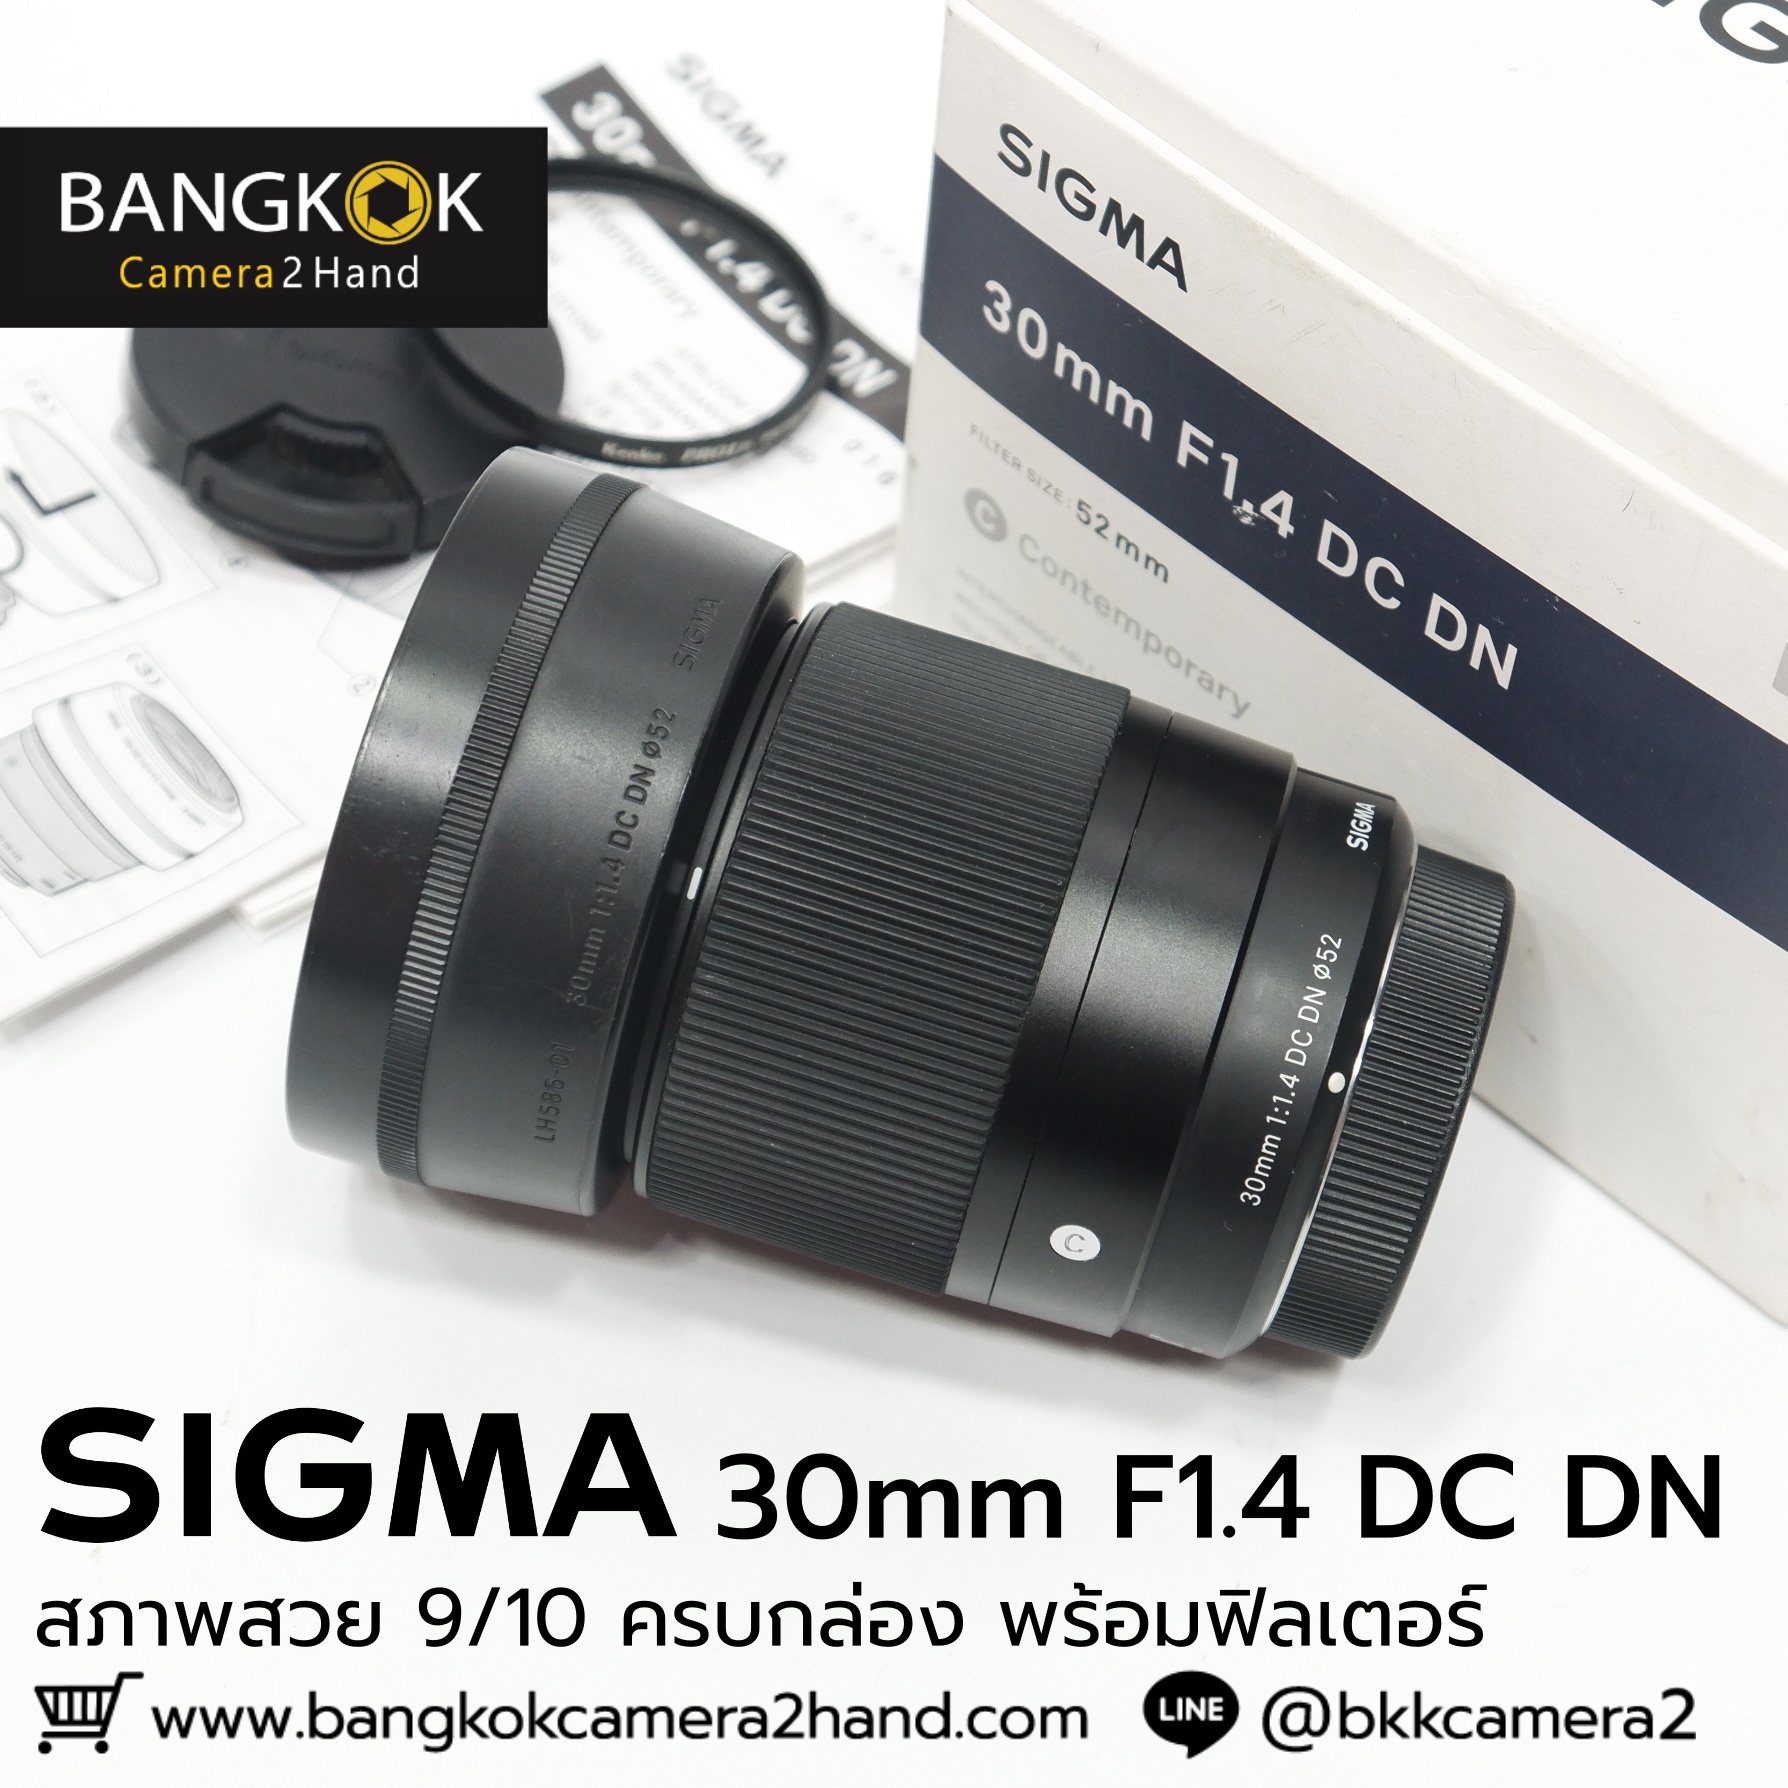 Sigma 30mm F1.4 ครบกล่อง พร้อมฟิลเตอร์